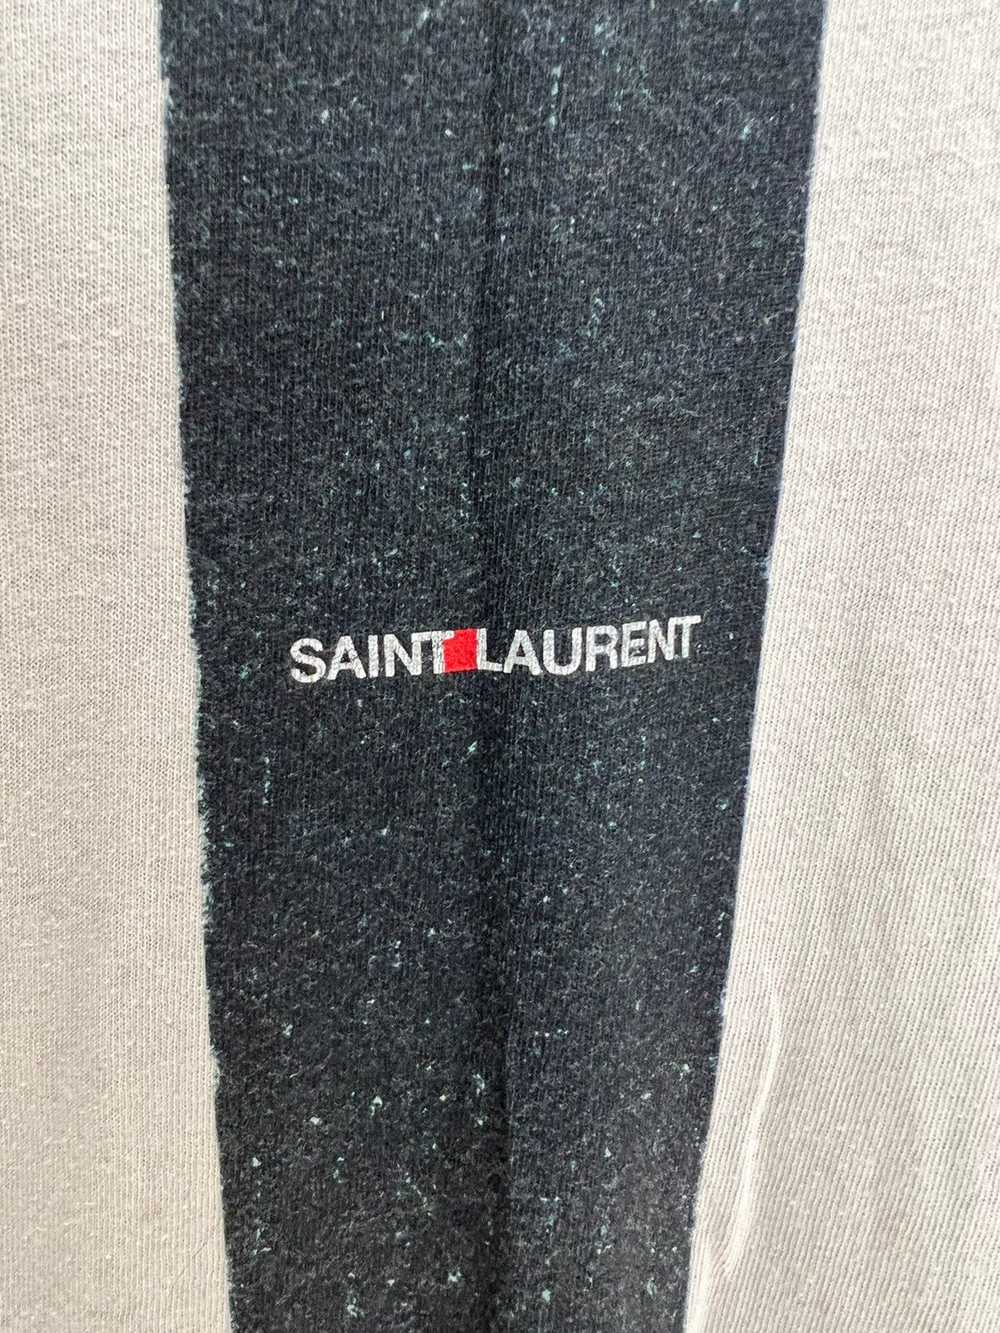 Saint Laurent Paris Striped logo t - image 4